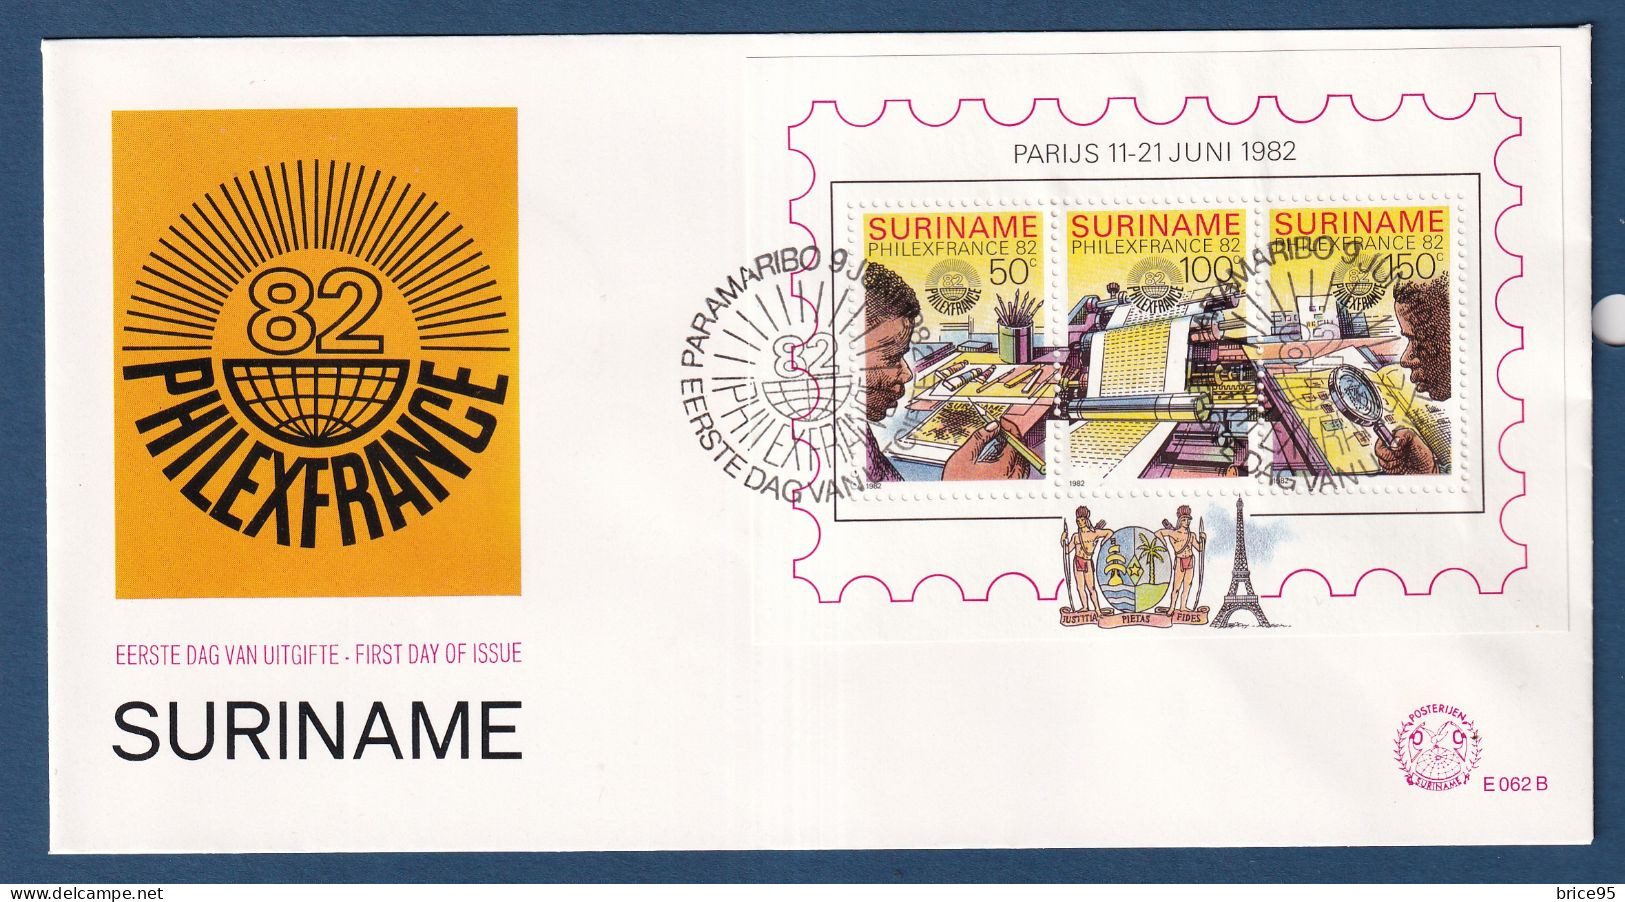 Surinam - FDC - Premier Jour - PhilexFrance 82 - 1982 - Surinam